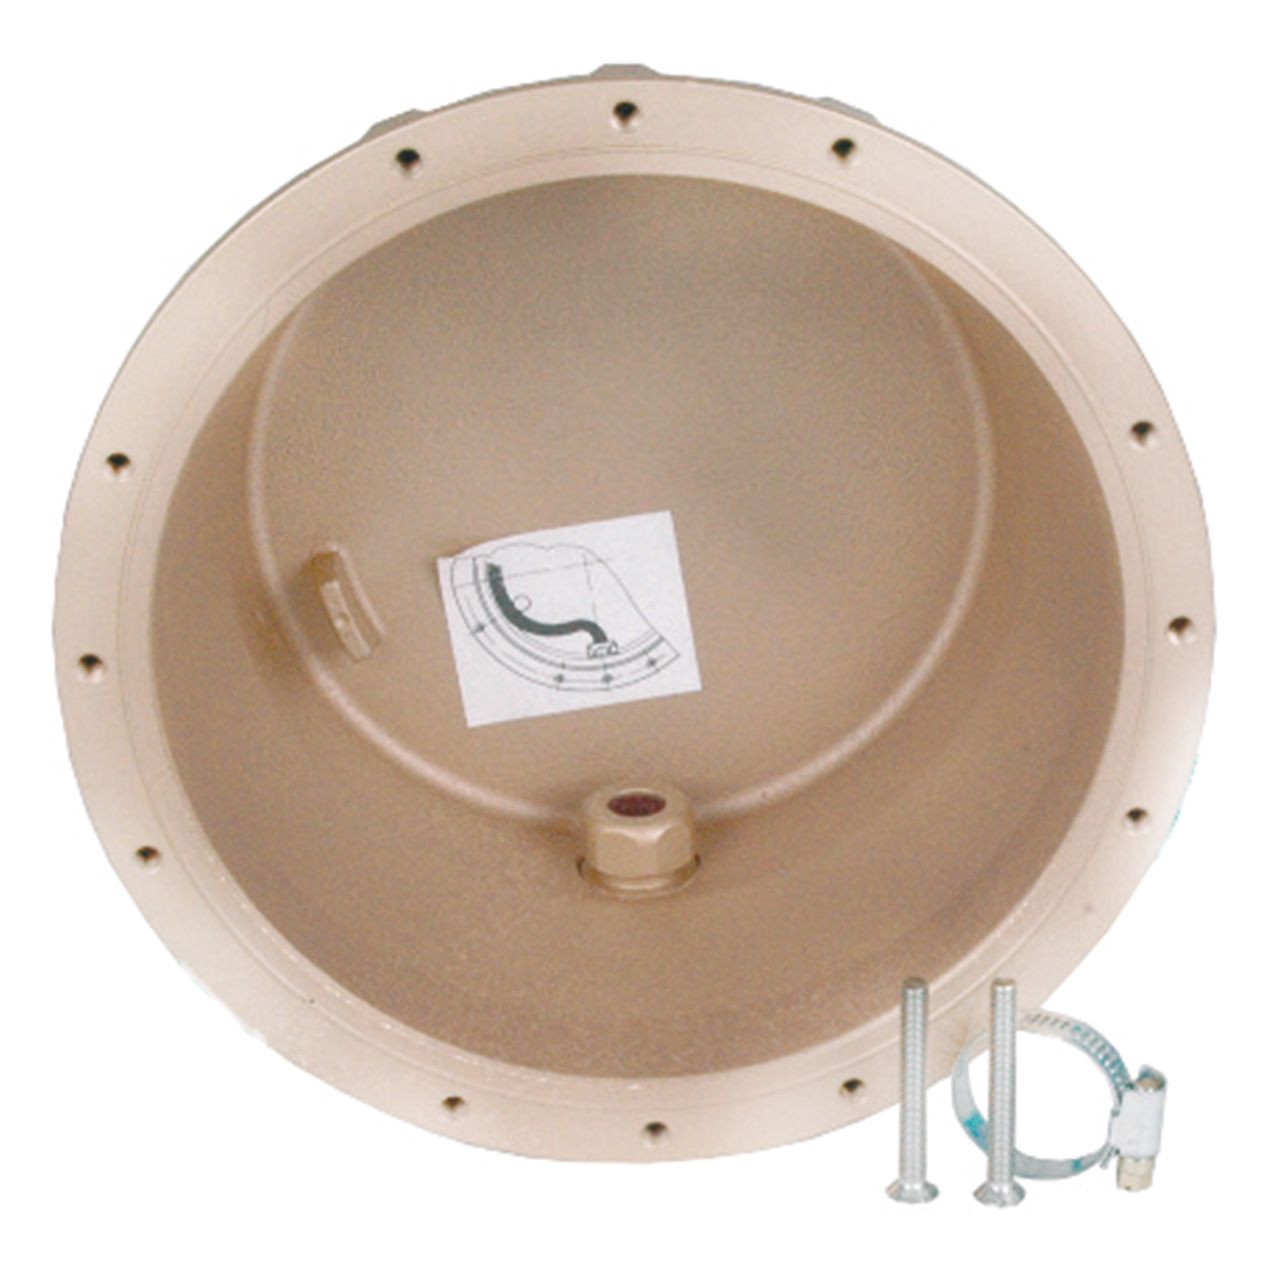 Einbaunische für LED Unterwasserscheinwerfer VitaLight 270 mm rotguss bronzelegierung